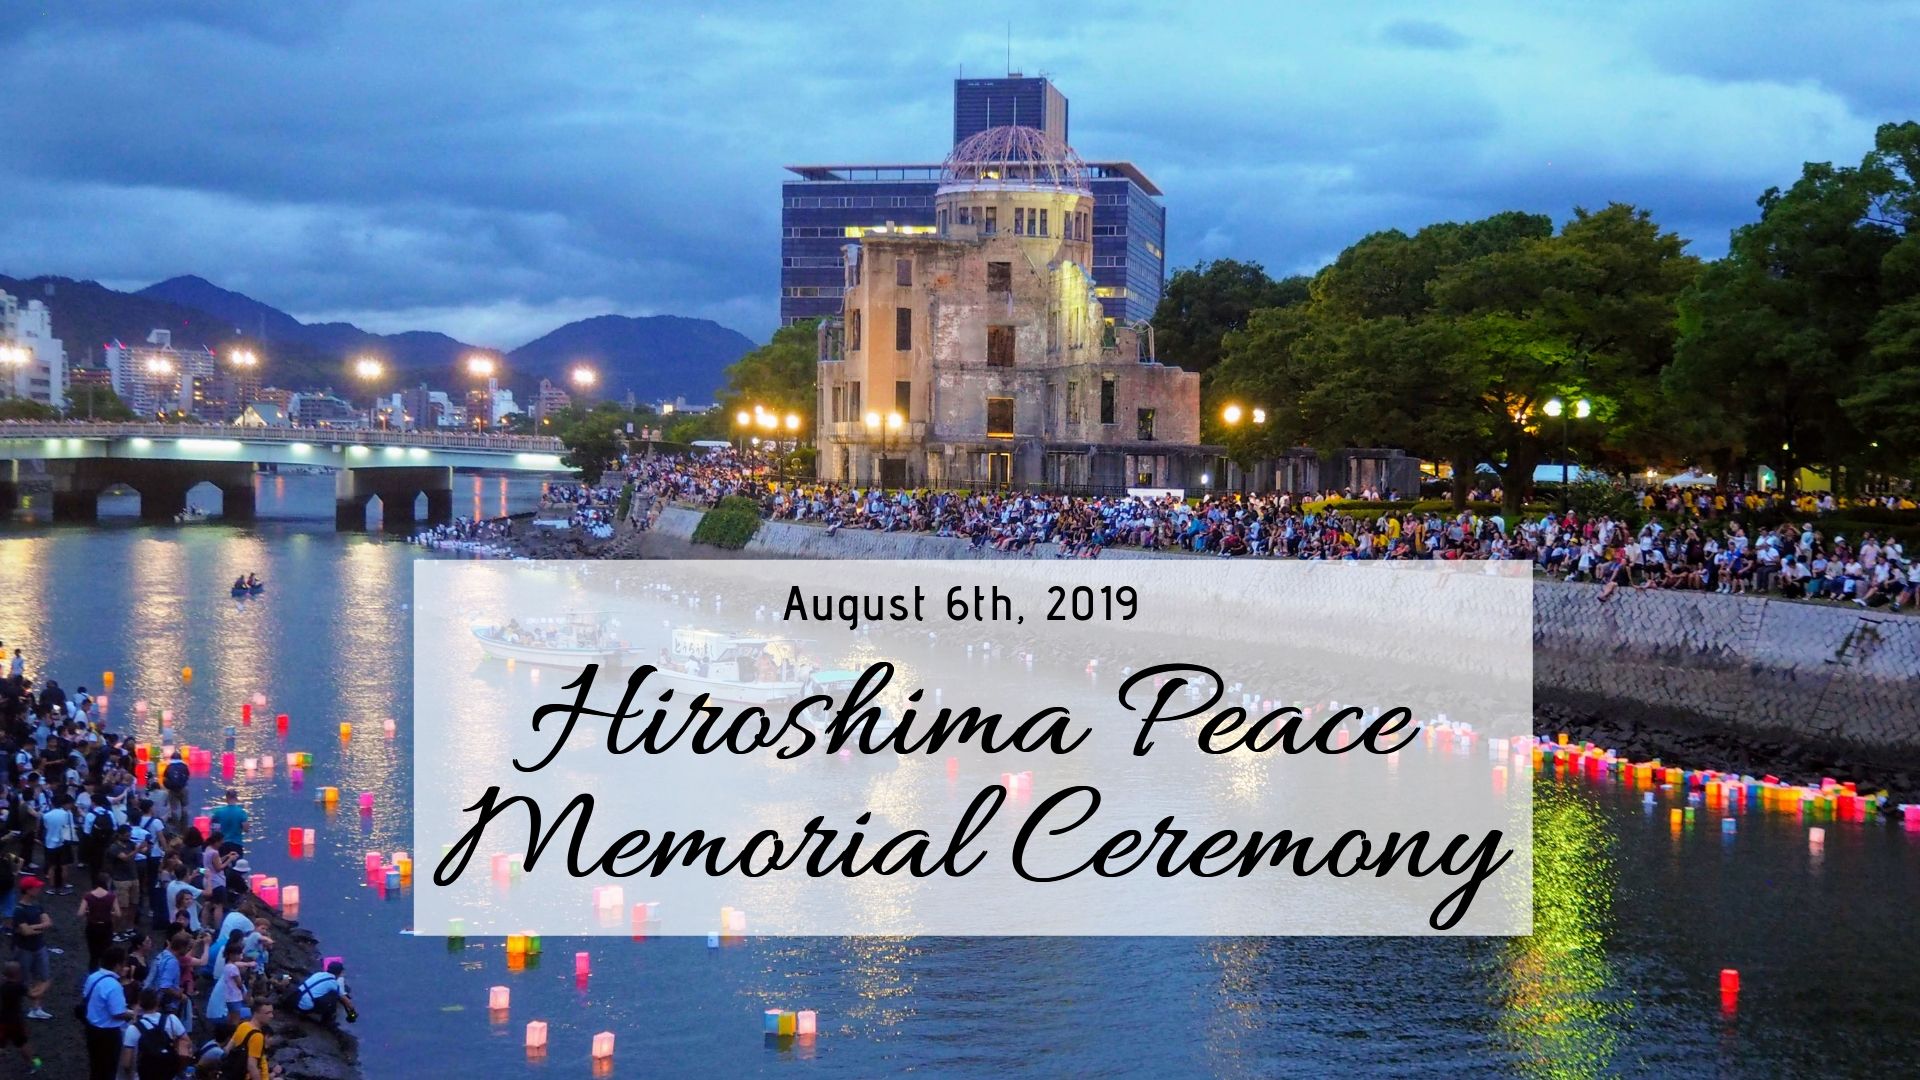 HIroshima peace memorial museum visit, August 6th 1945 Hiroshima peace memorial ceremony 2019 Cenotaph victims memorial pinterest